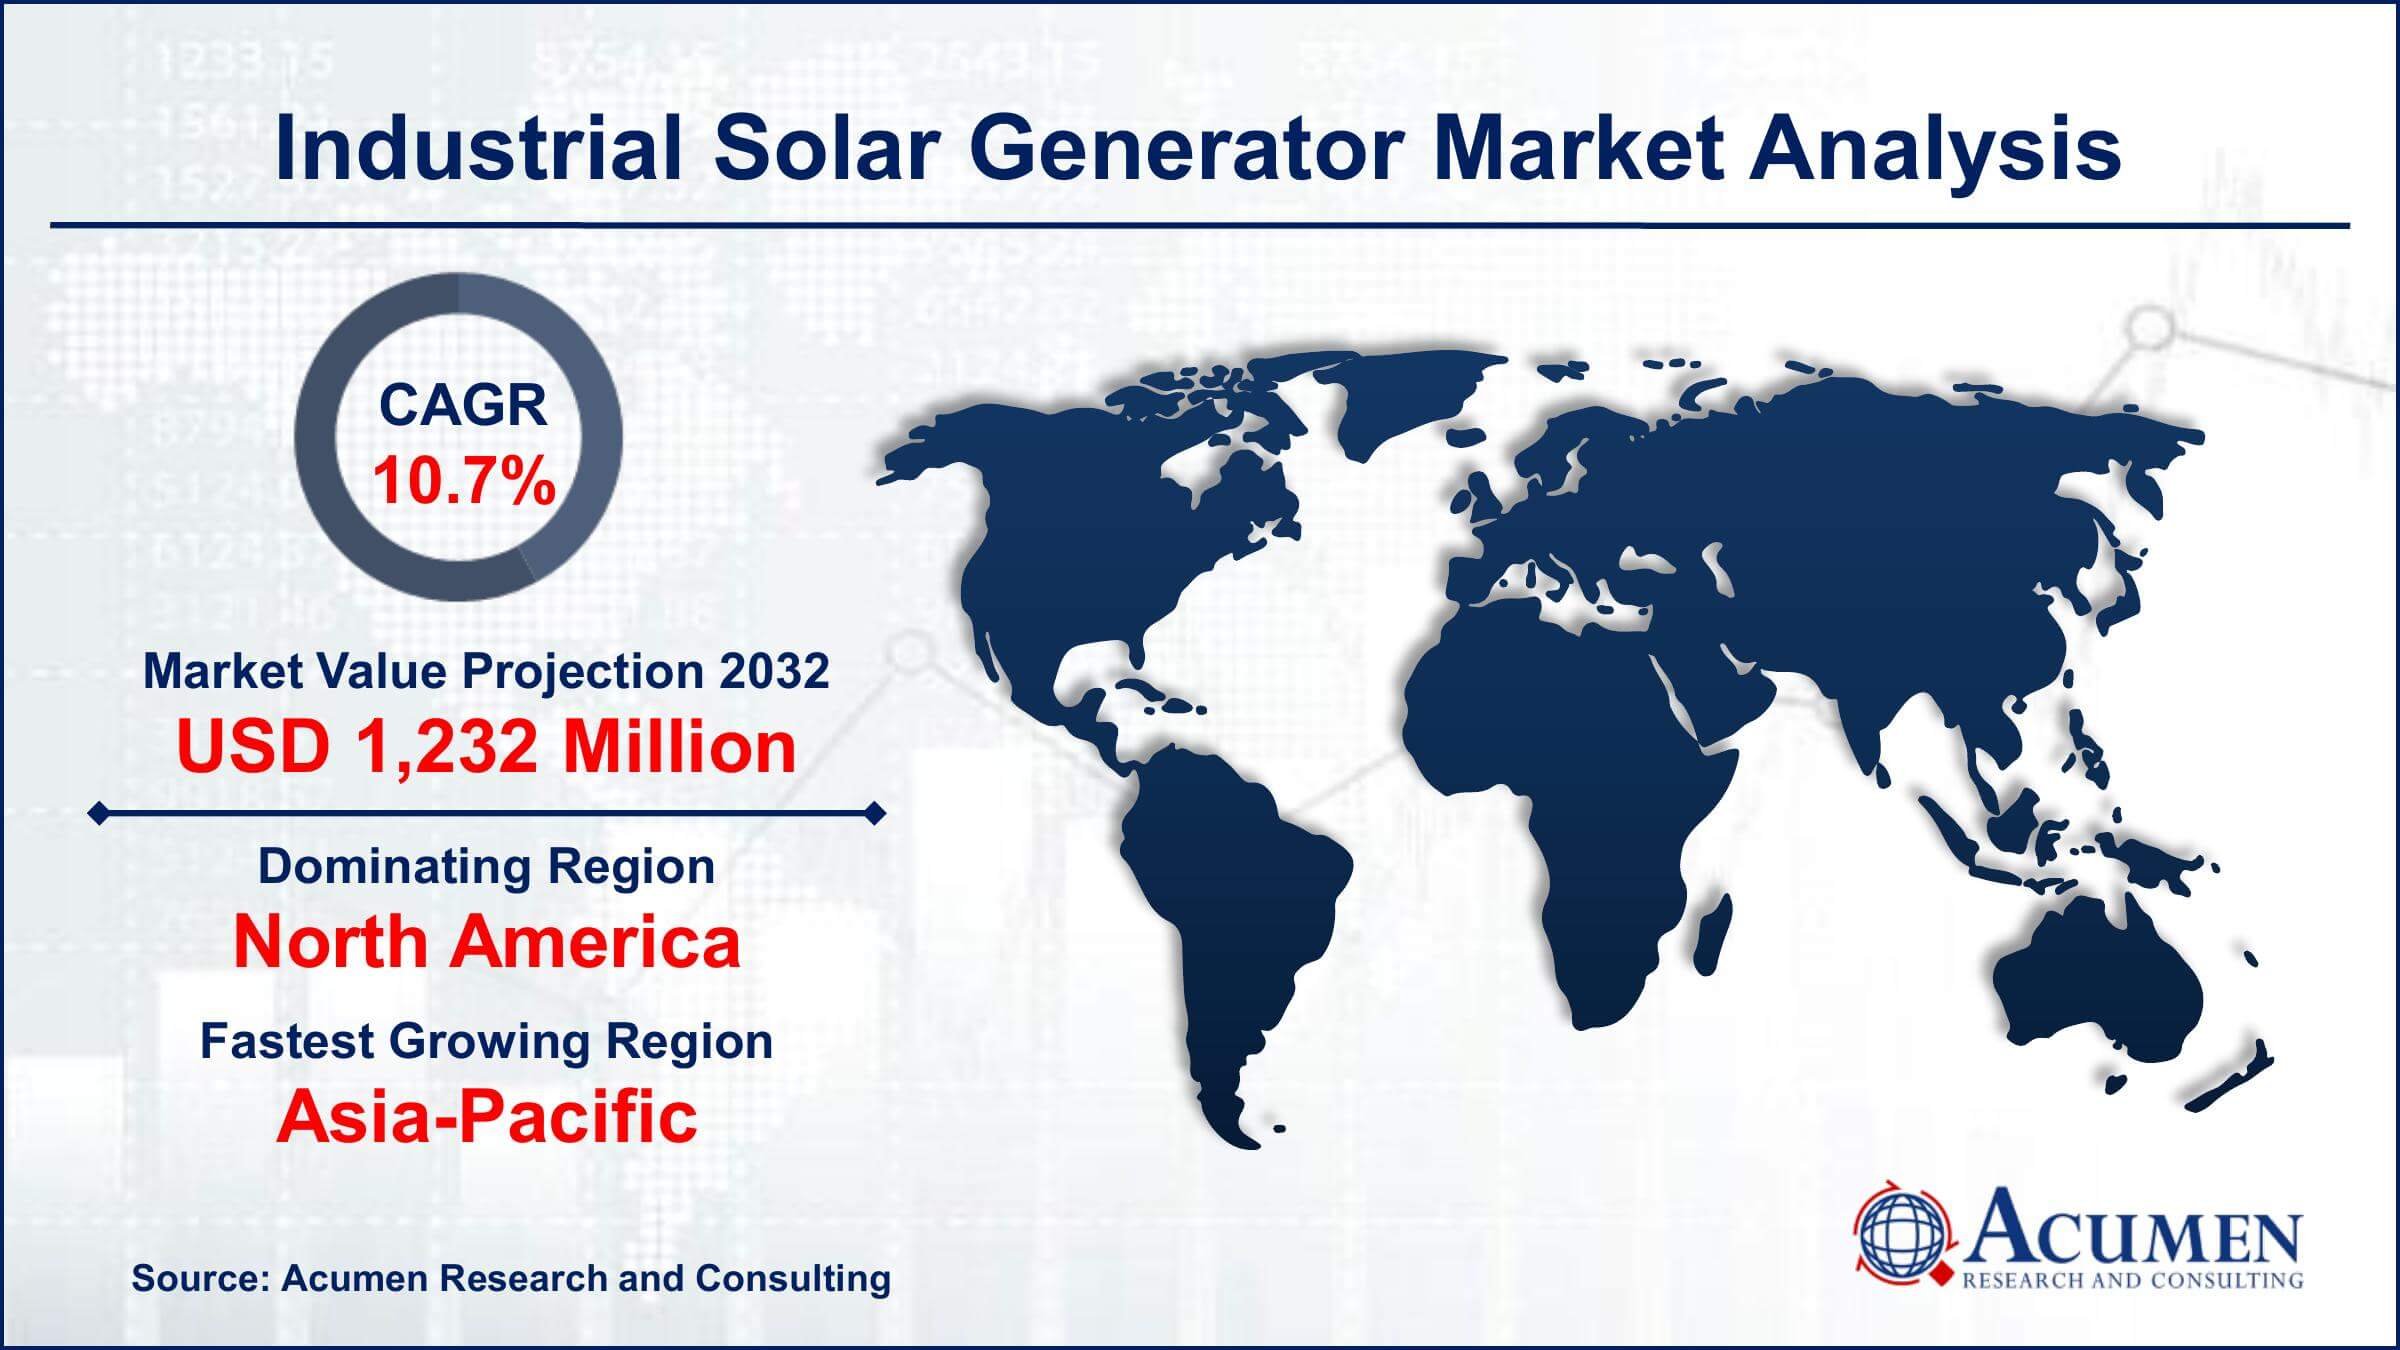 Global Industrial Solar Generator Market Trends